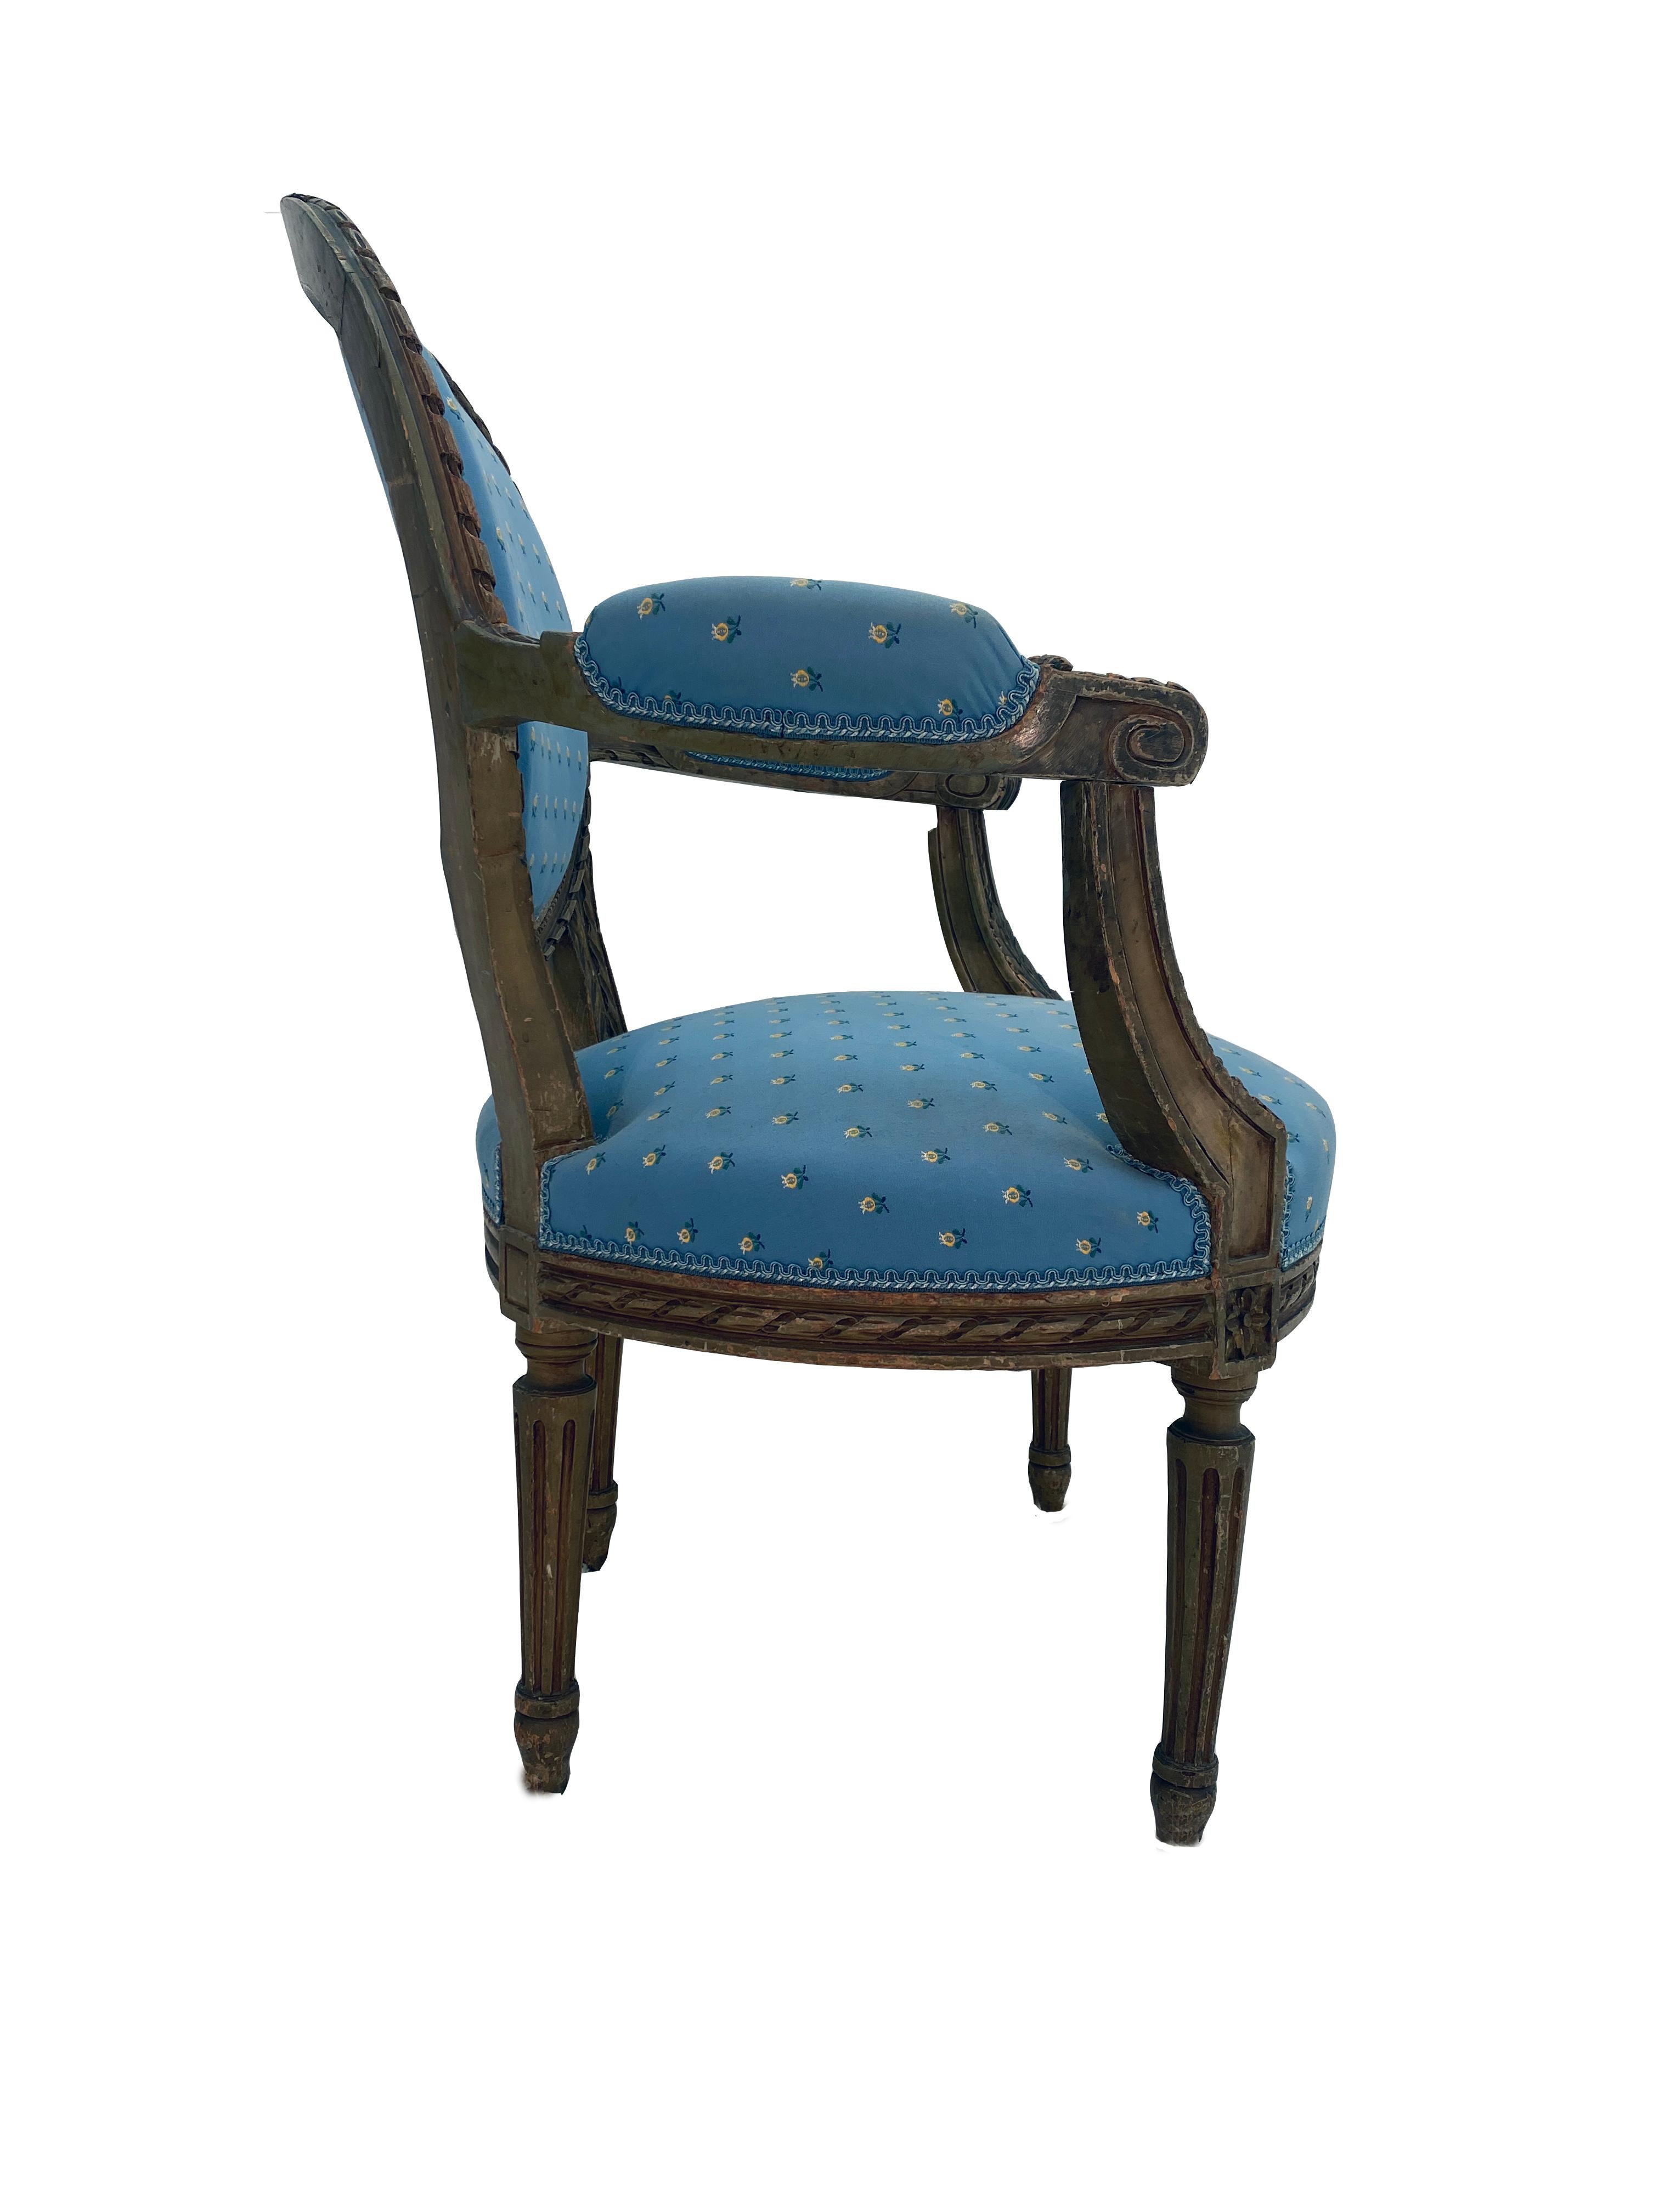 Il s'agit d'un fauteuil français classique de style Louis XVI dans un état remarquable. La chaise a été fabriquée en noyer massif. Il est très solide et ne présente aucun signe de dommages ou de réparations antérieurs. La tapisserie a été mise à